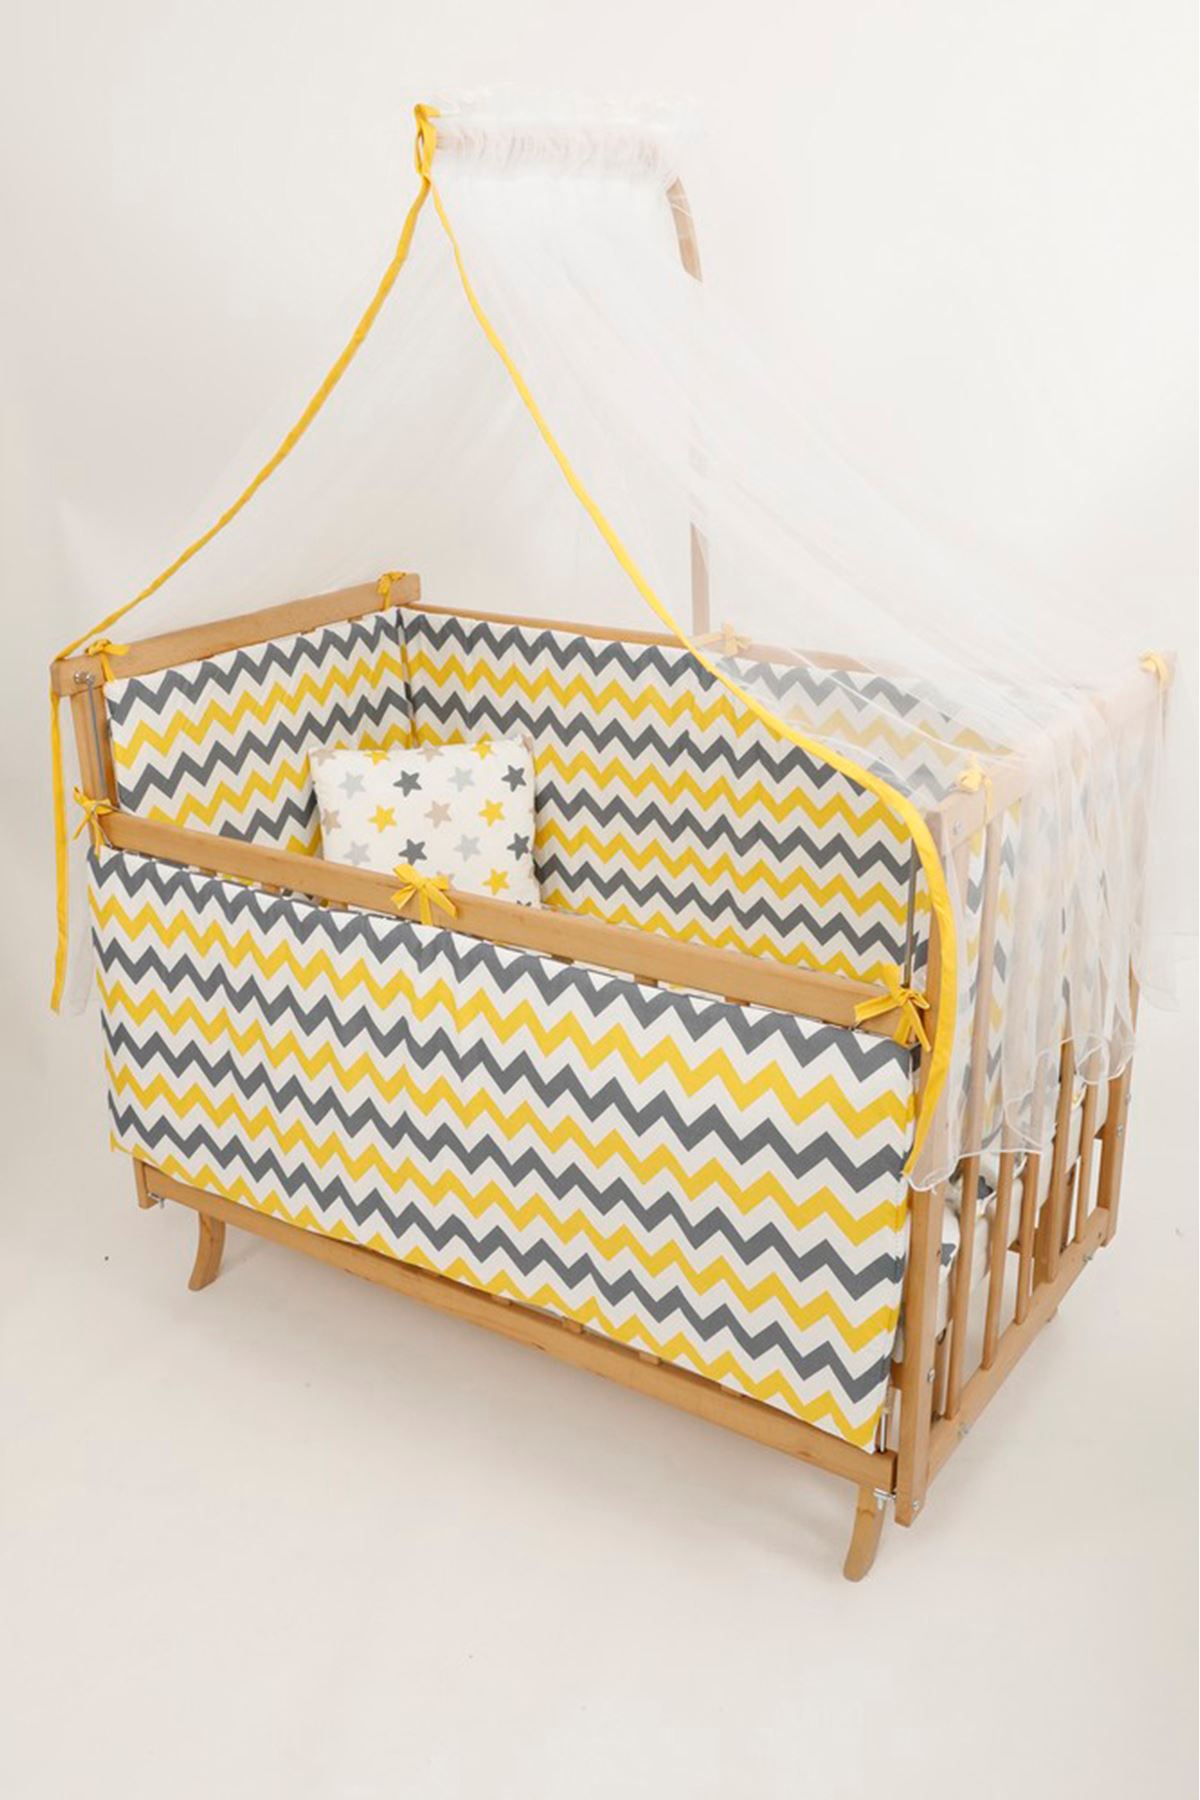 Baby cot with yellow sleep set